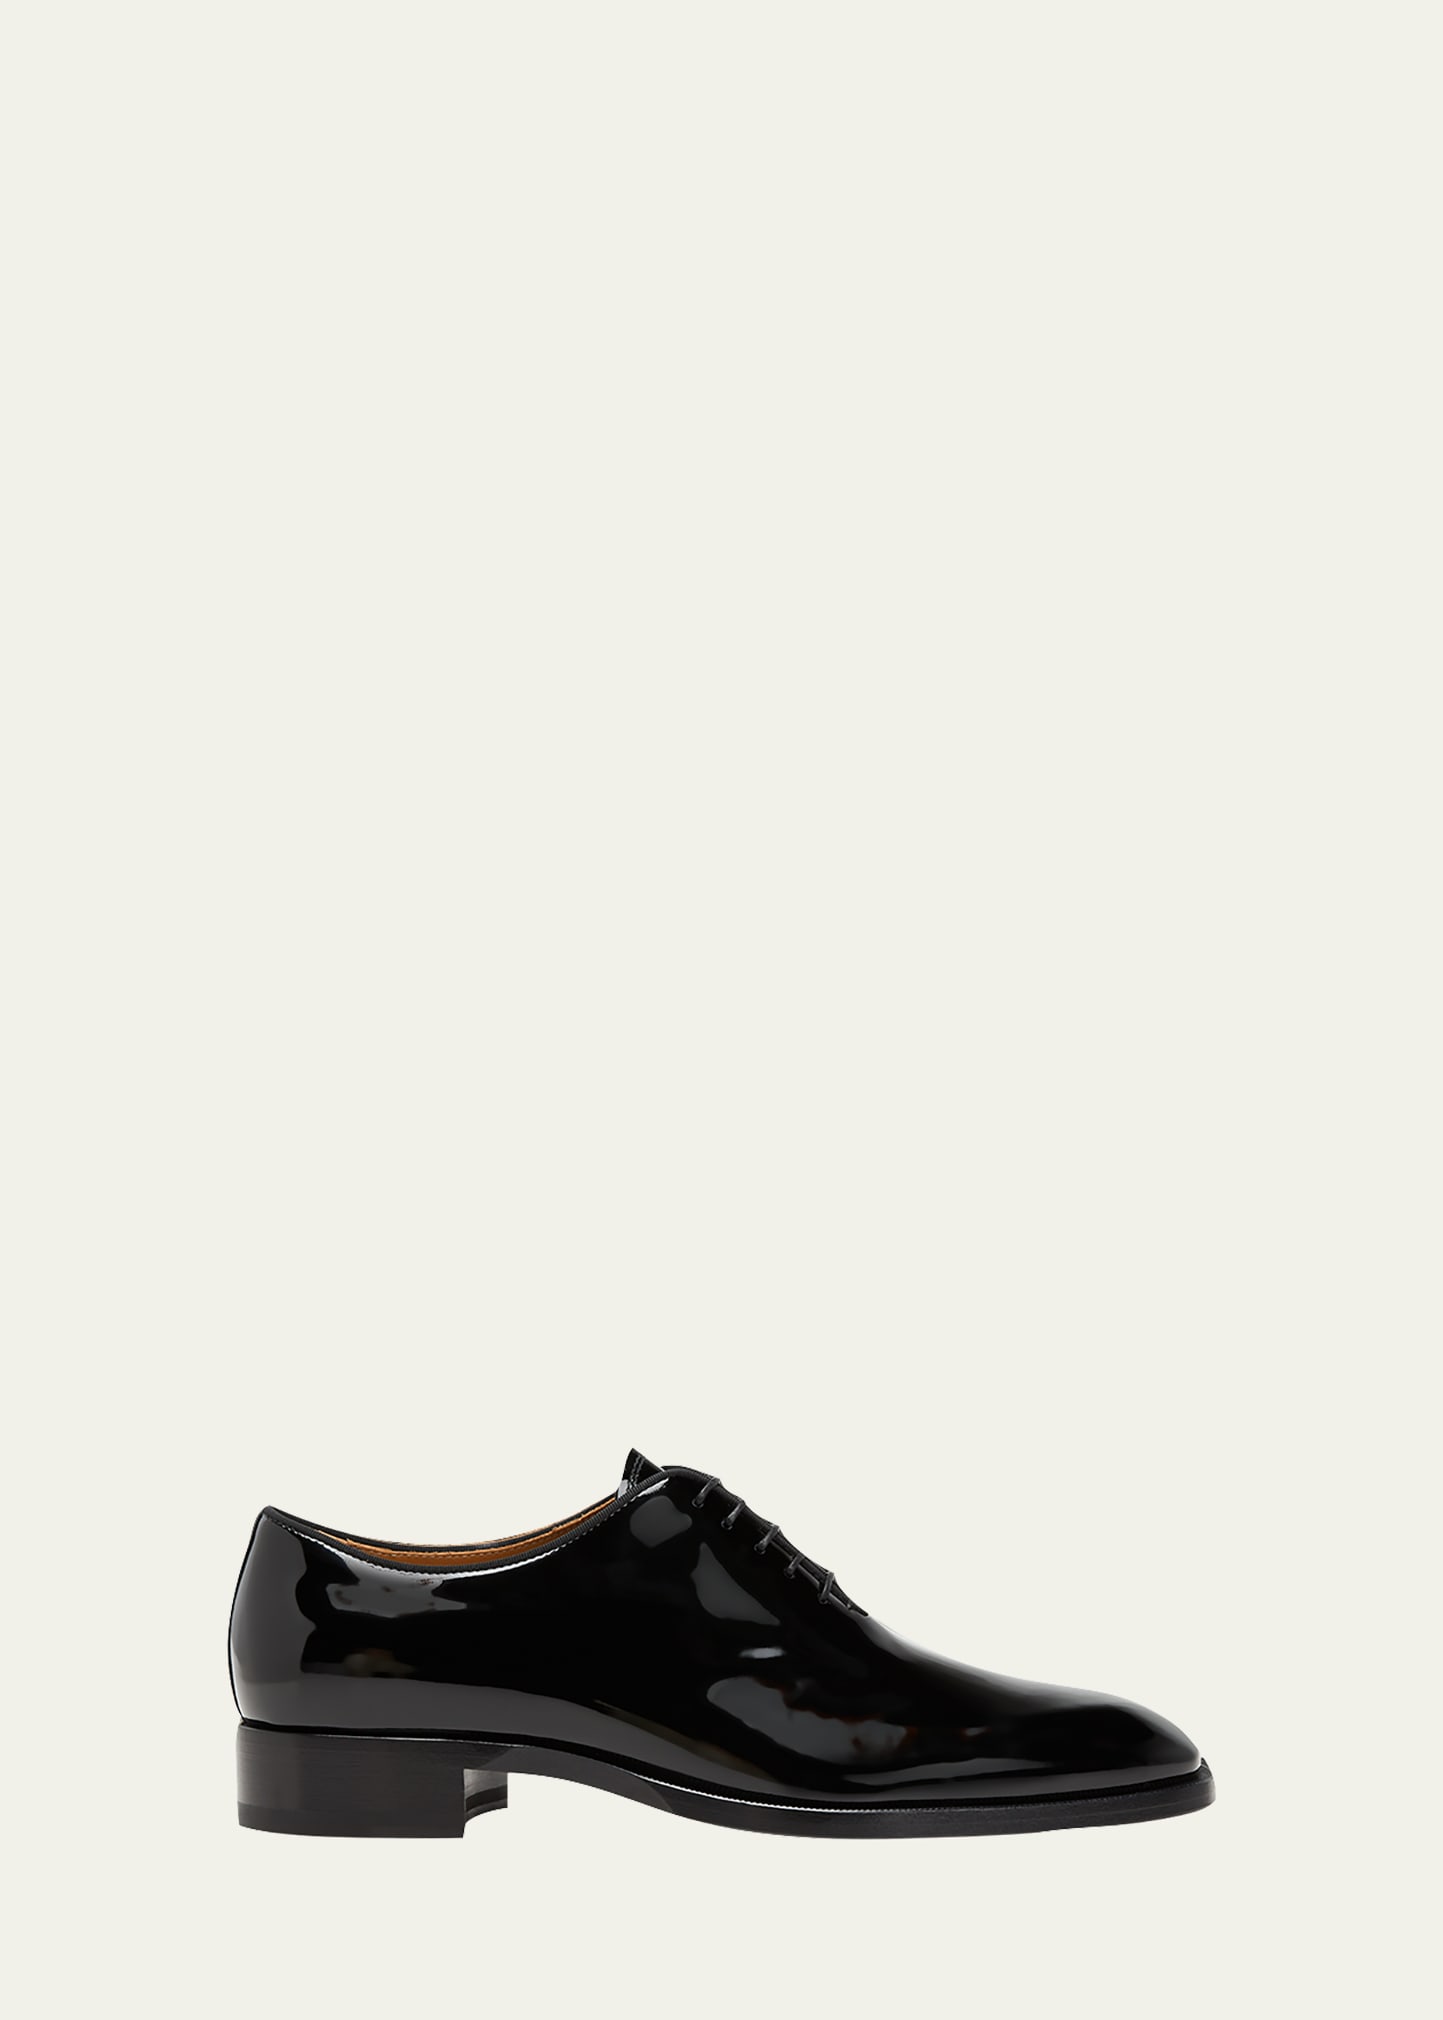 Christian Louboutin Men'S Shoes | Bergdorf Goodman